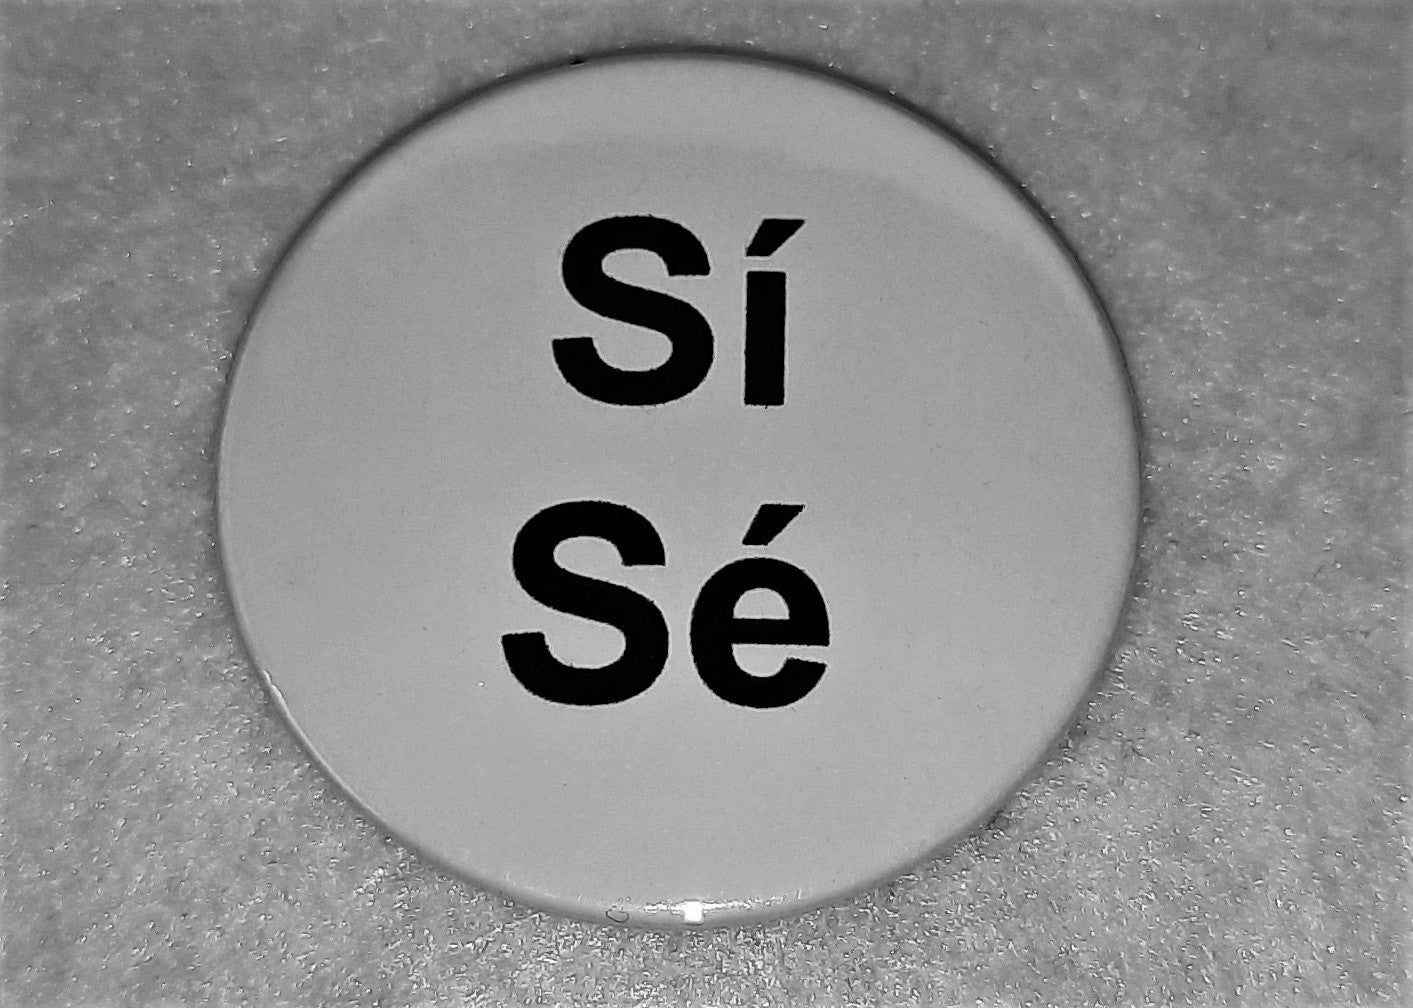 She/He & Sí/Sé  Pronoun Badge - Tully Crafts